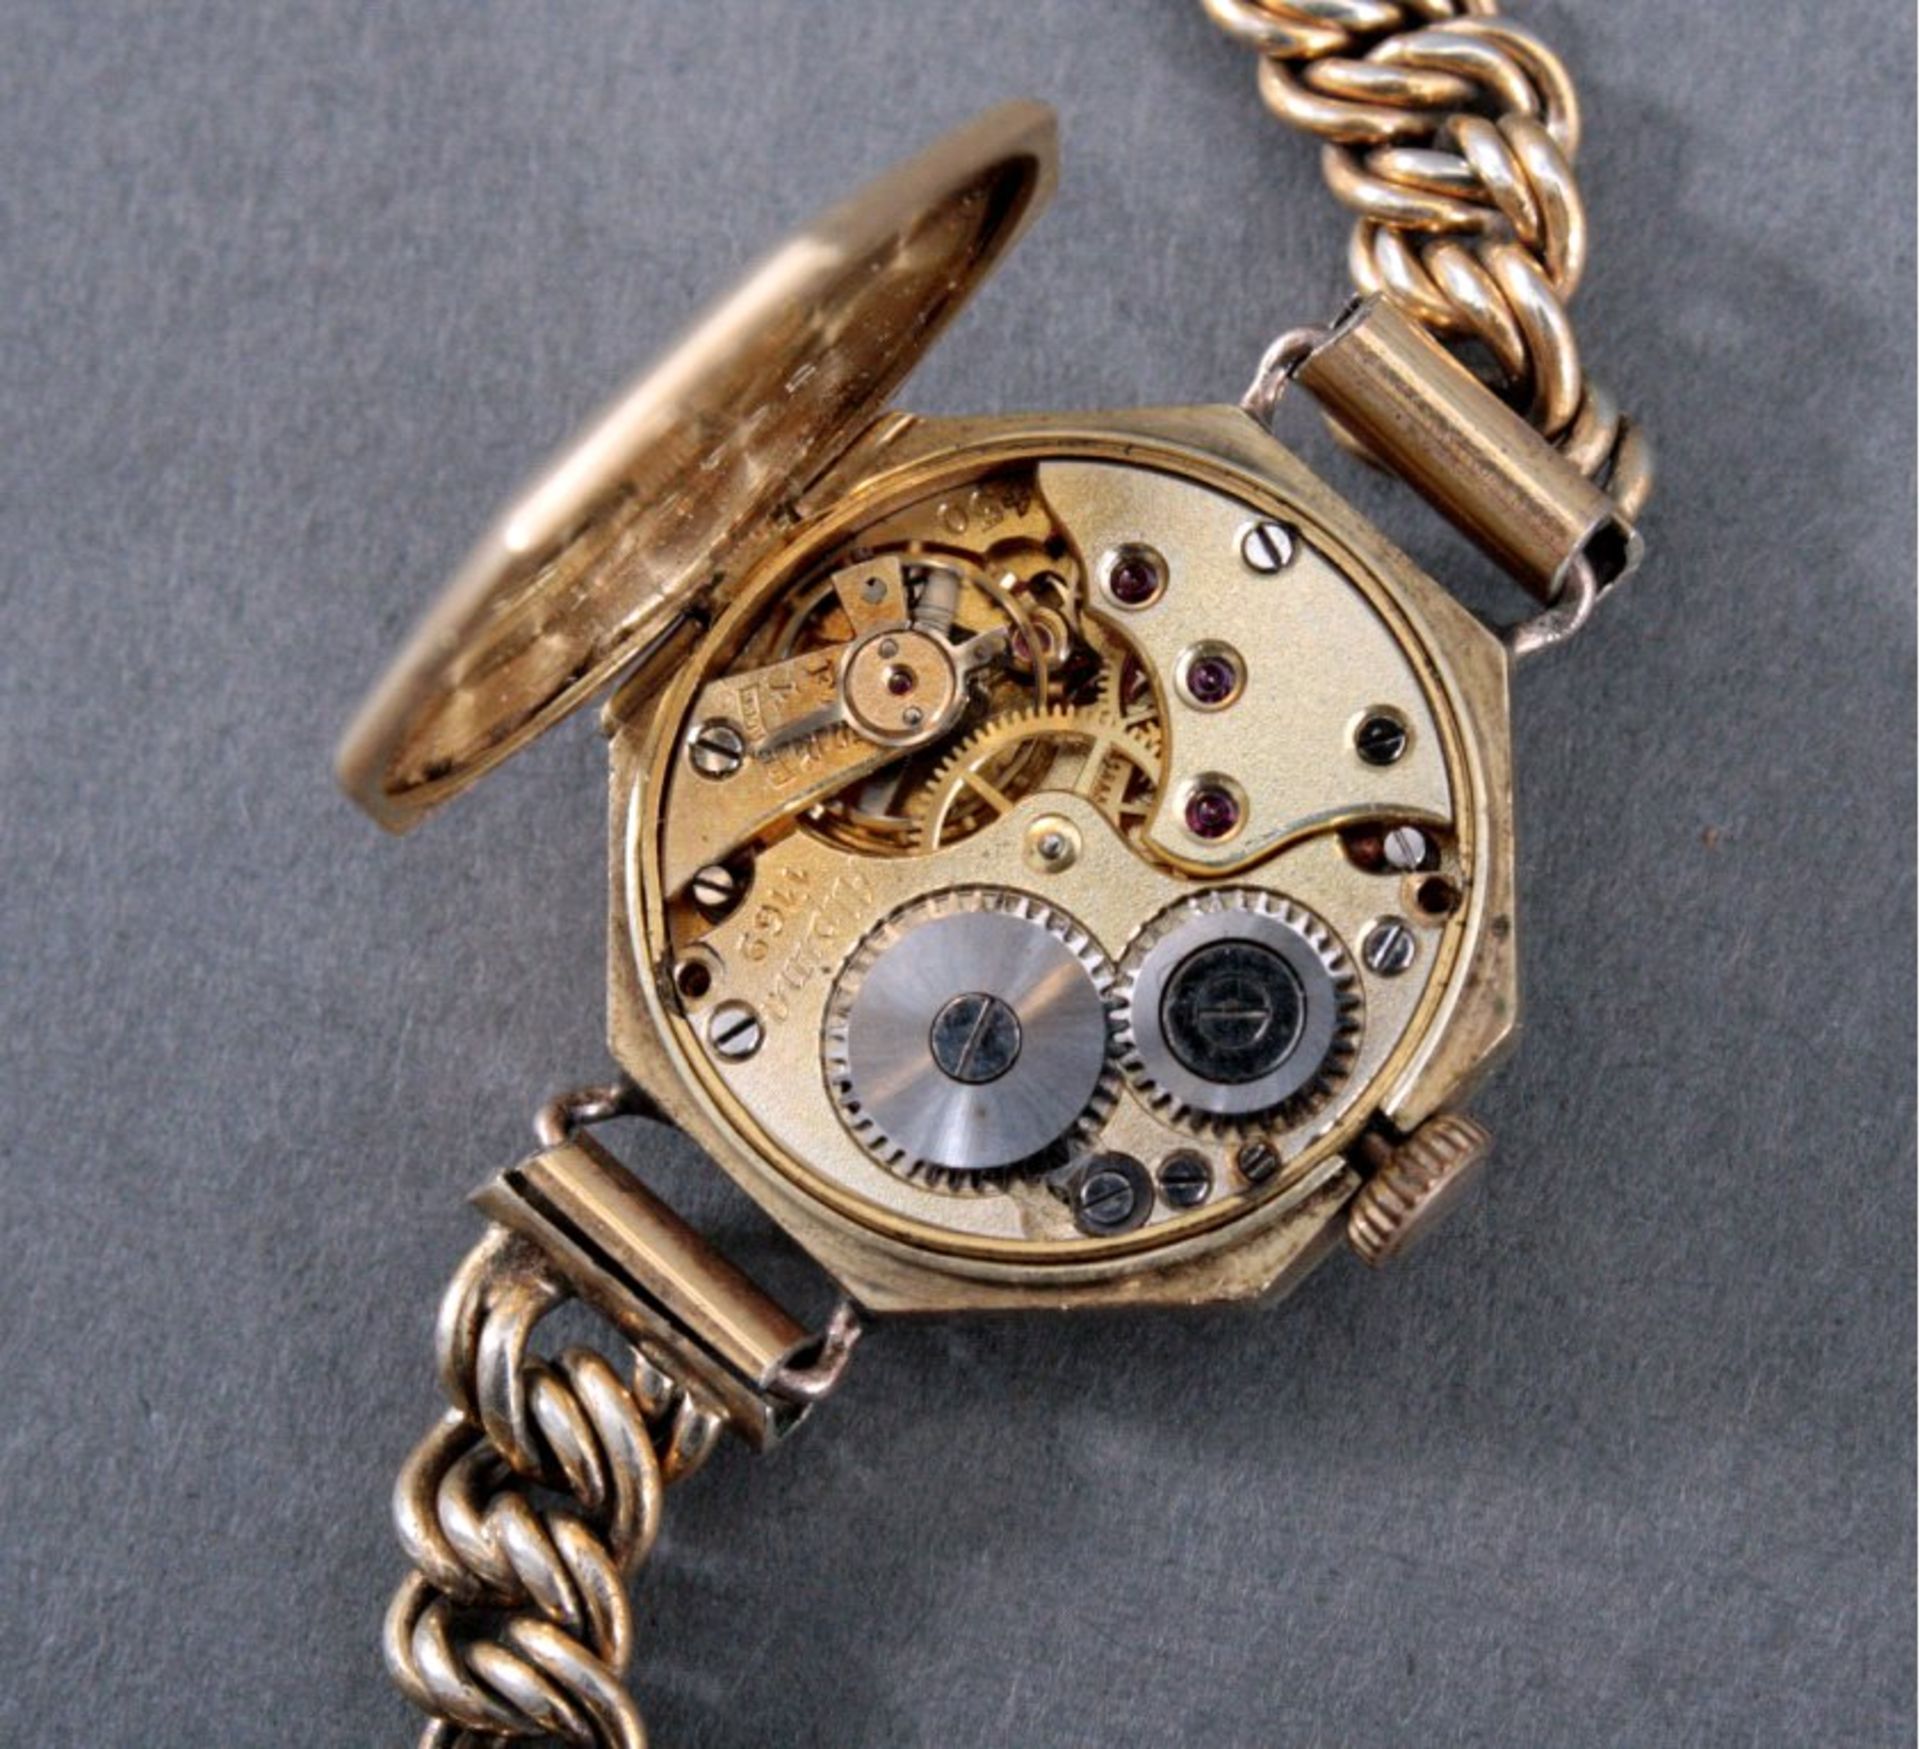 Damenarmbanduhr der Marke Albina um 1900Uhrengehäuse aus 585er Gelbgold, im Uhrendeckel punziert - Bild 2 aus 2